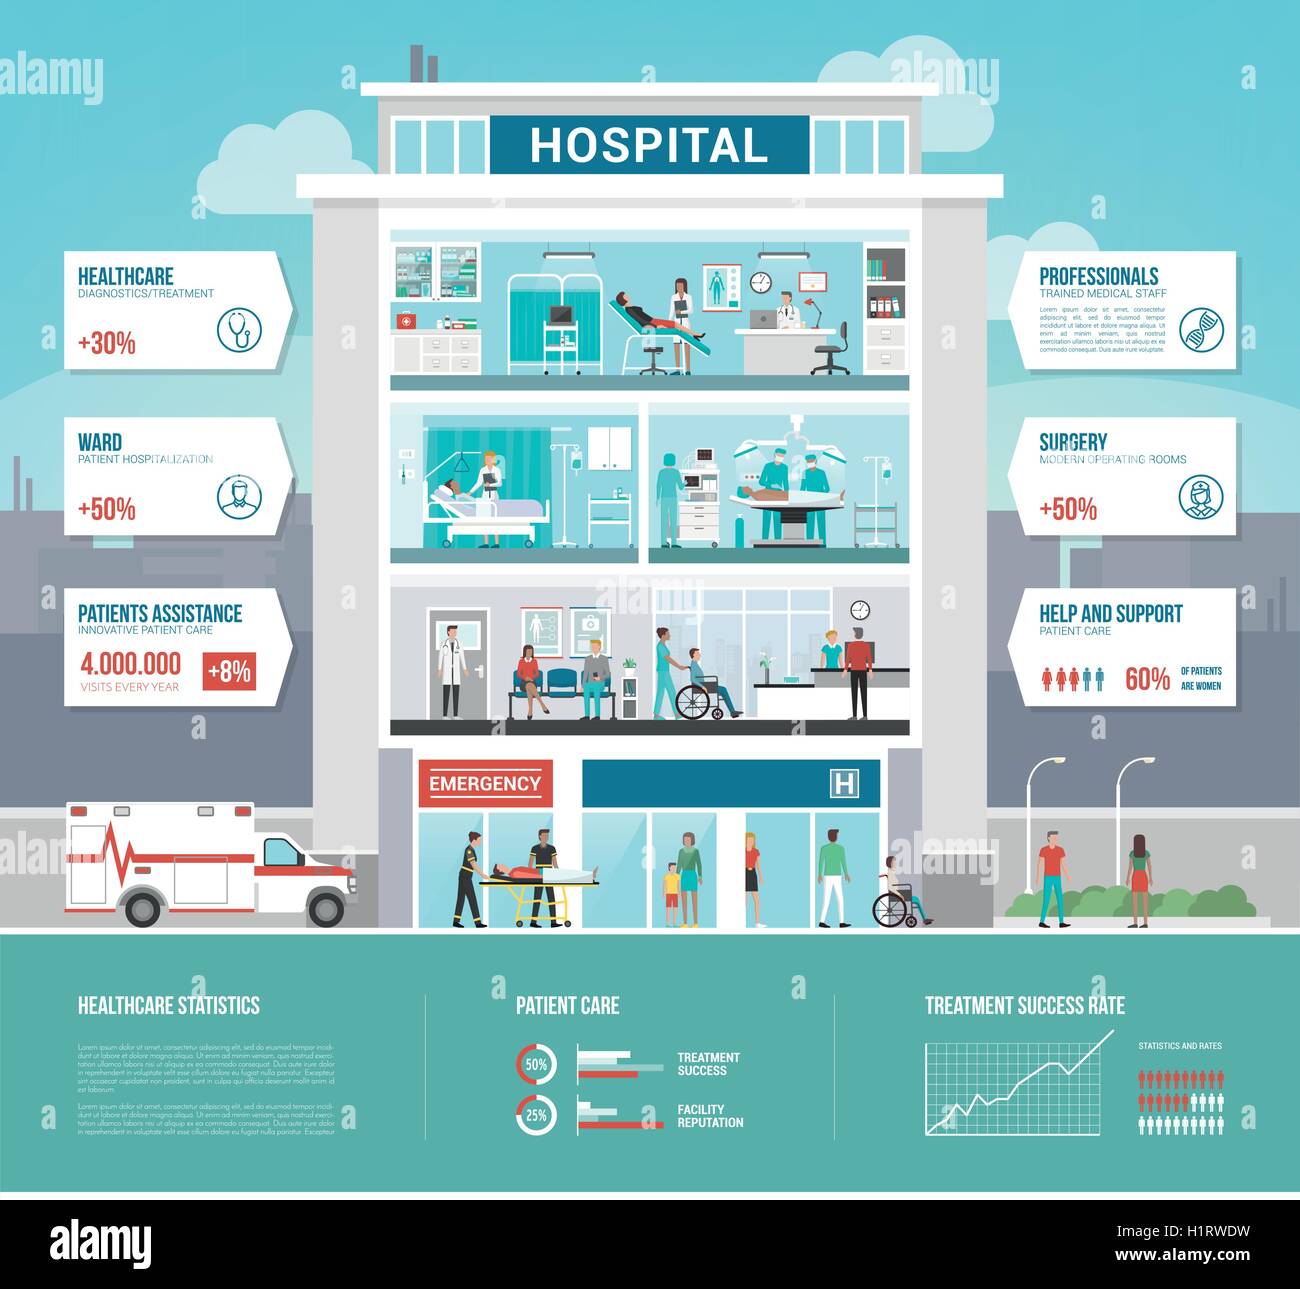 Des hôpitaux et des soins de l'infographie avec les ministères, les patients et les médecins qui travaillent Illustration de Vecteur